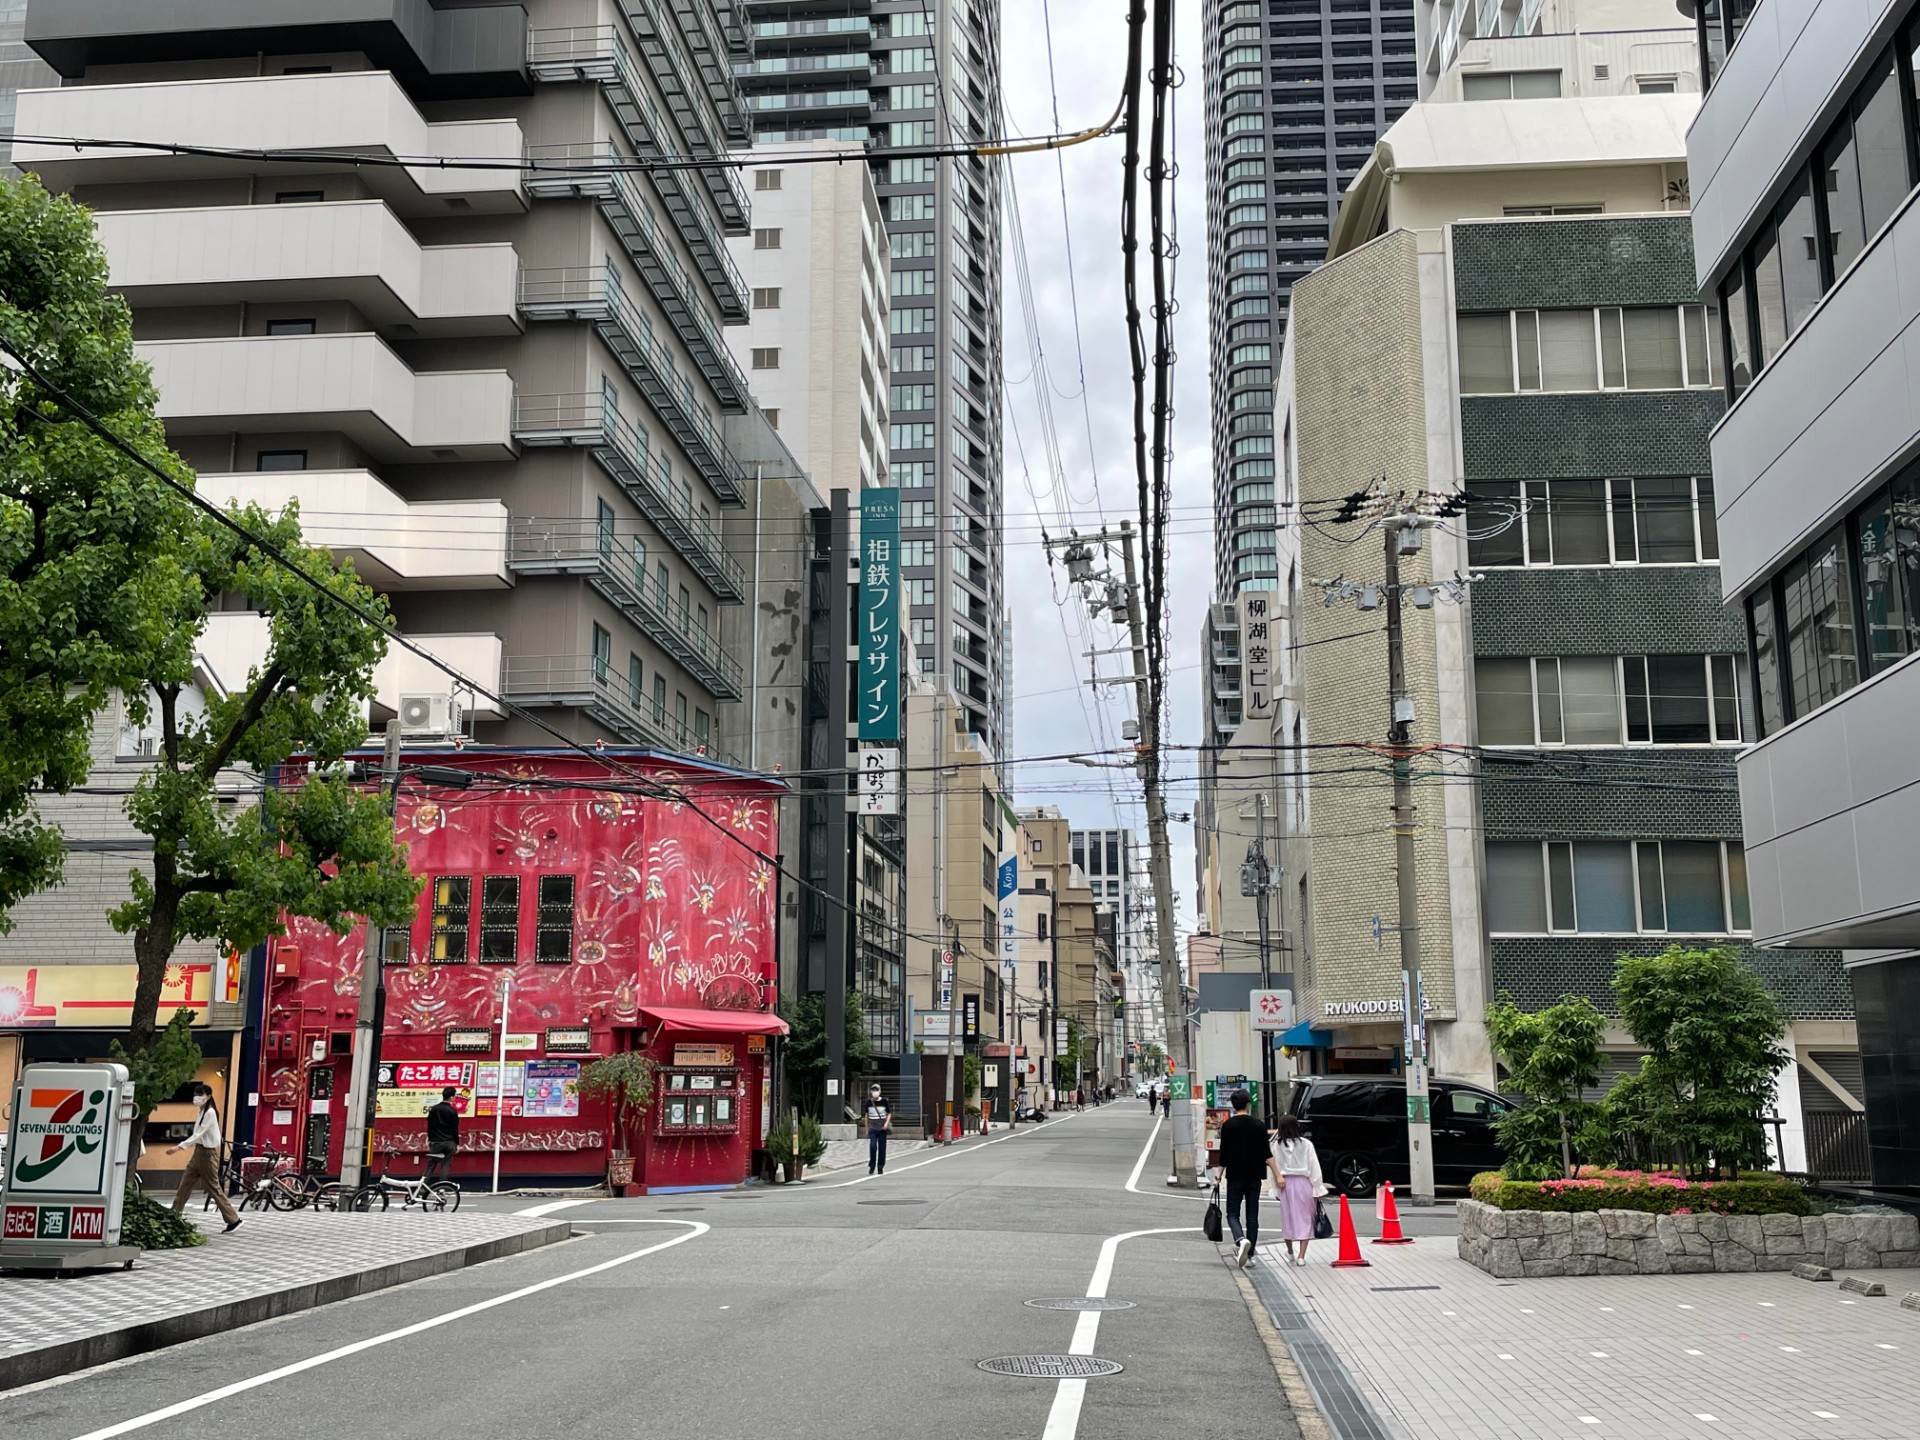 再往前走看到左手边的红色建筑后, 往里就是相铁FRESA INN 大阪淀屋桥。